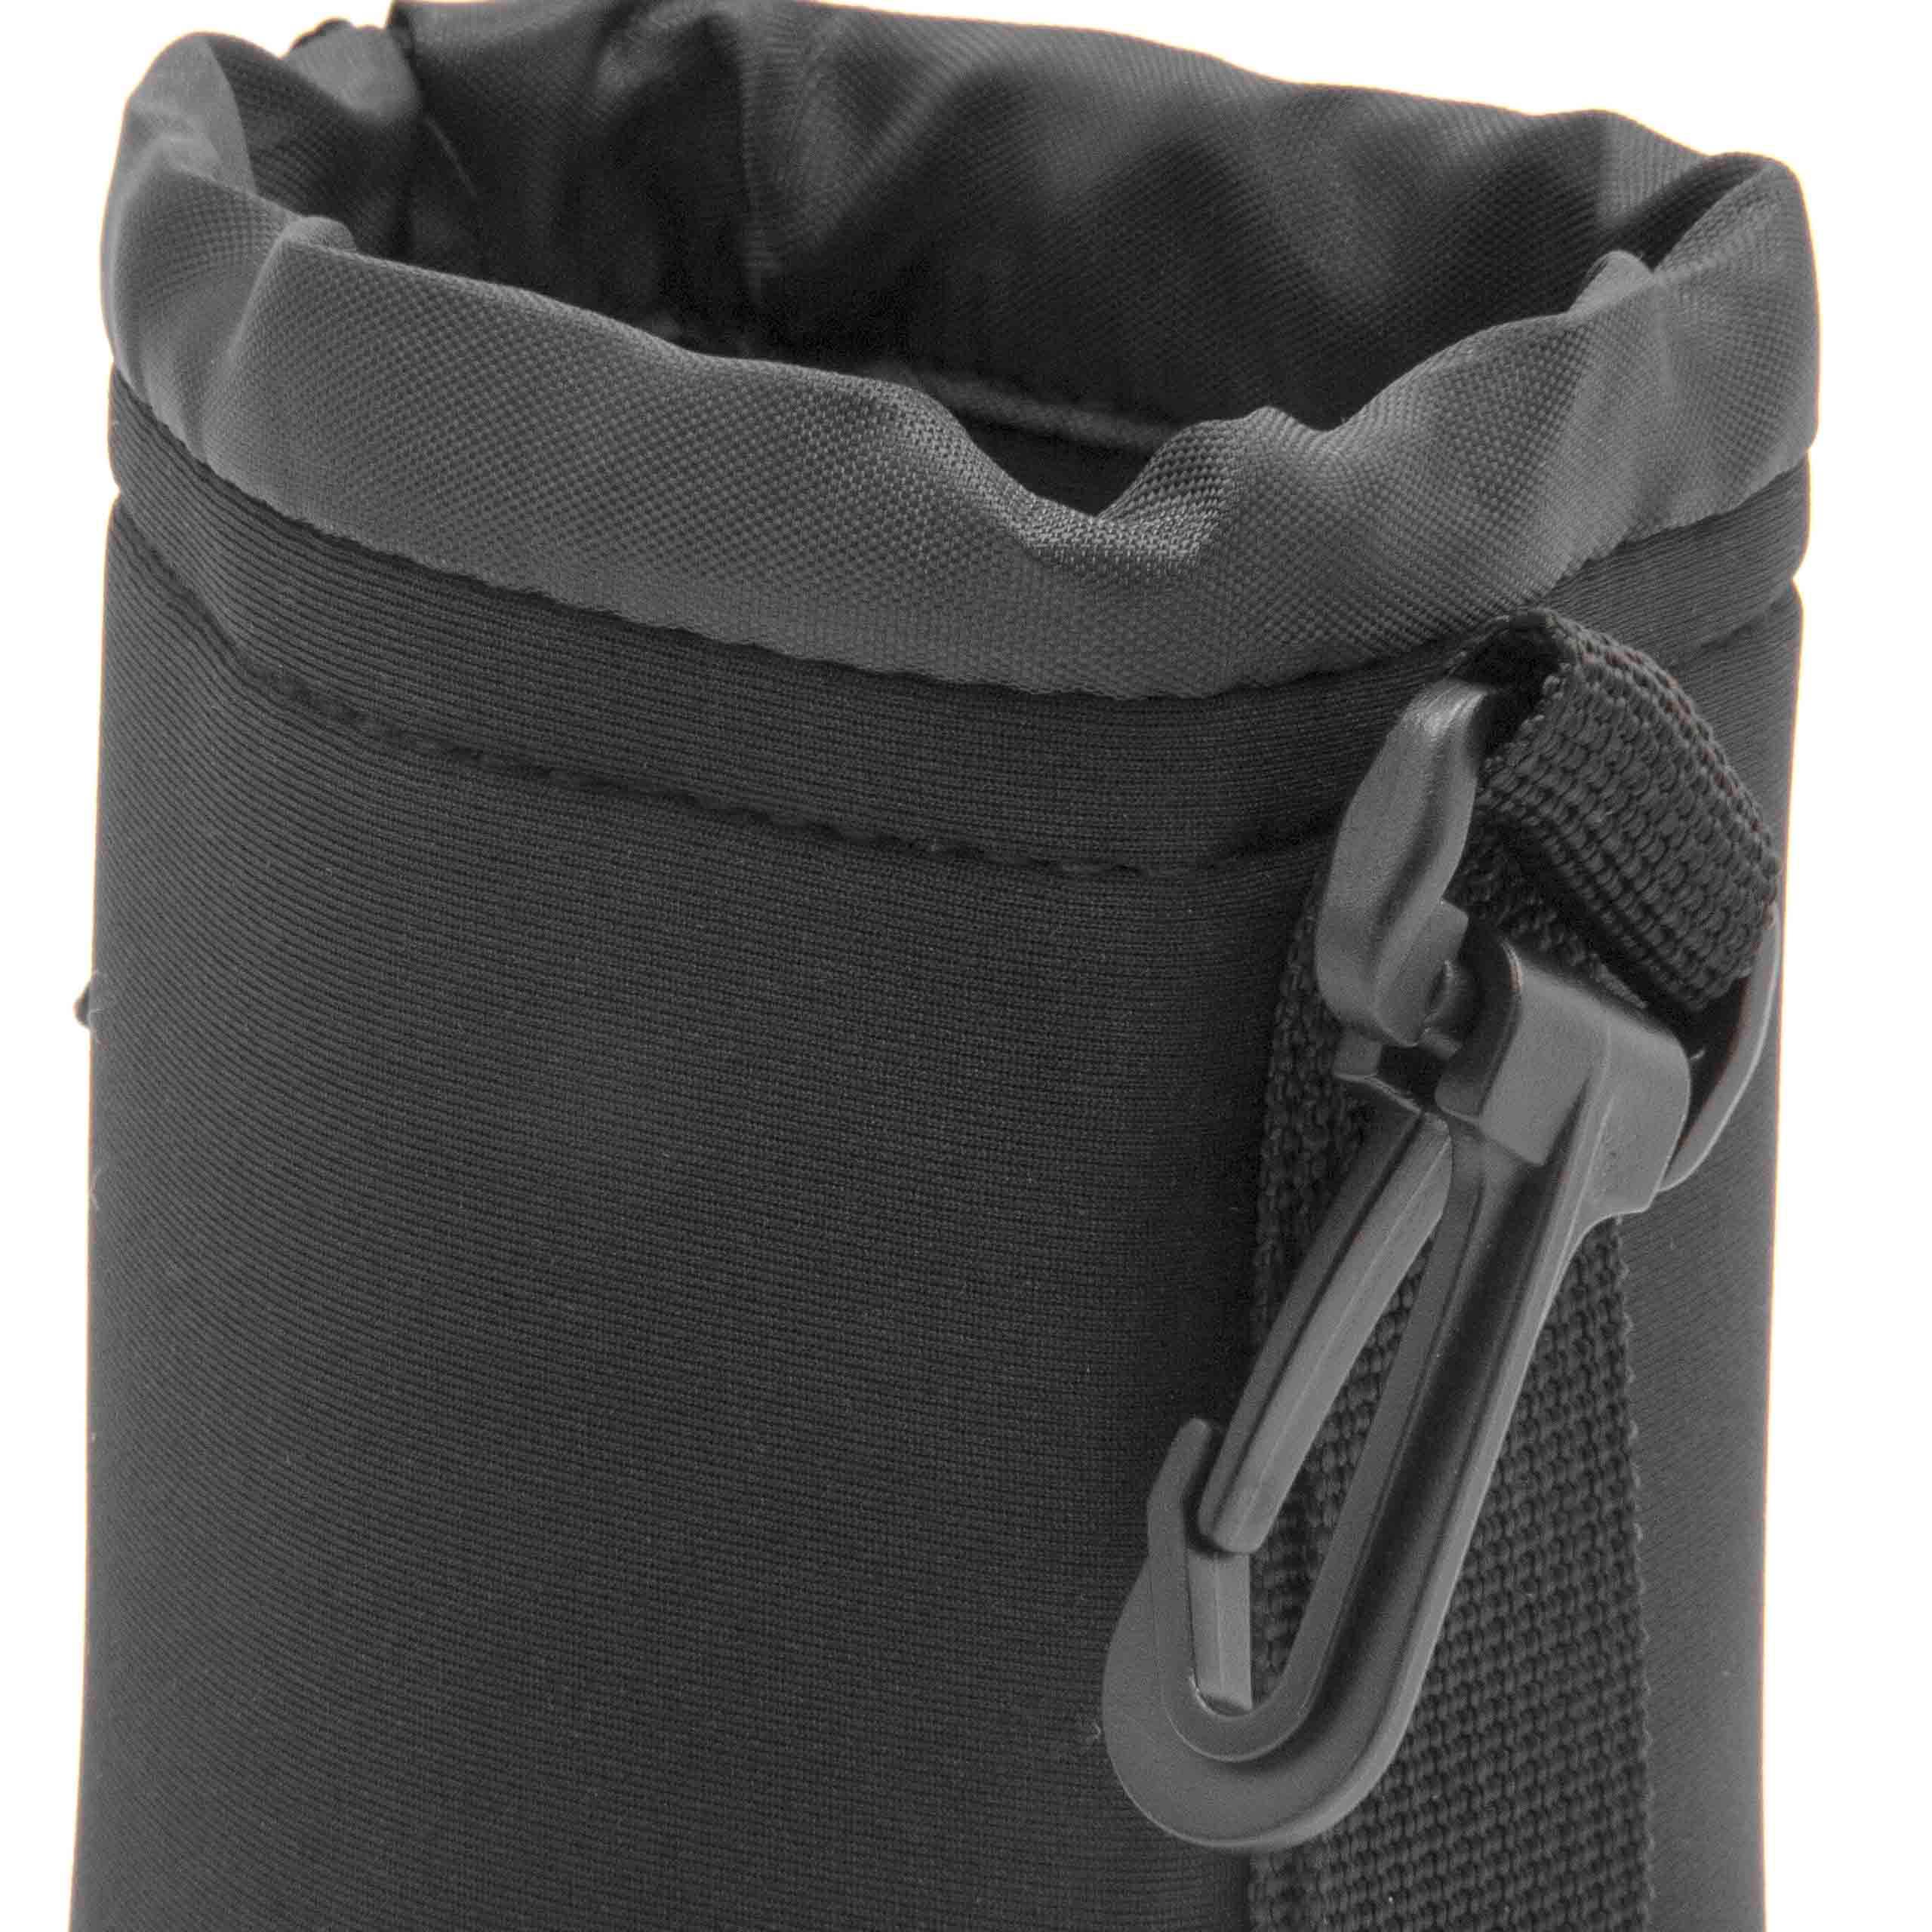 Bag, Case for Lenses - with Drawstring 12cm x 10cm black M